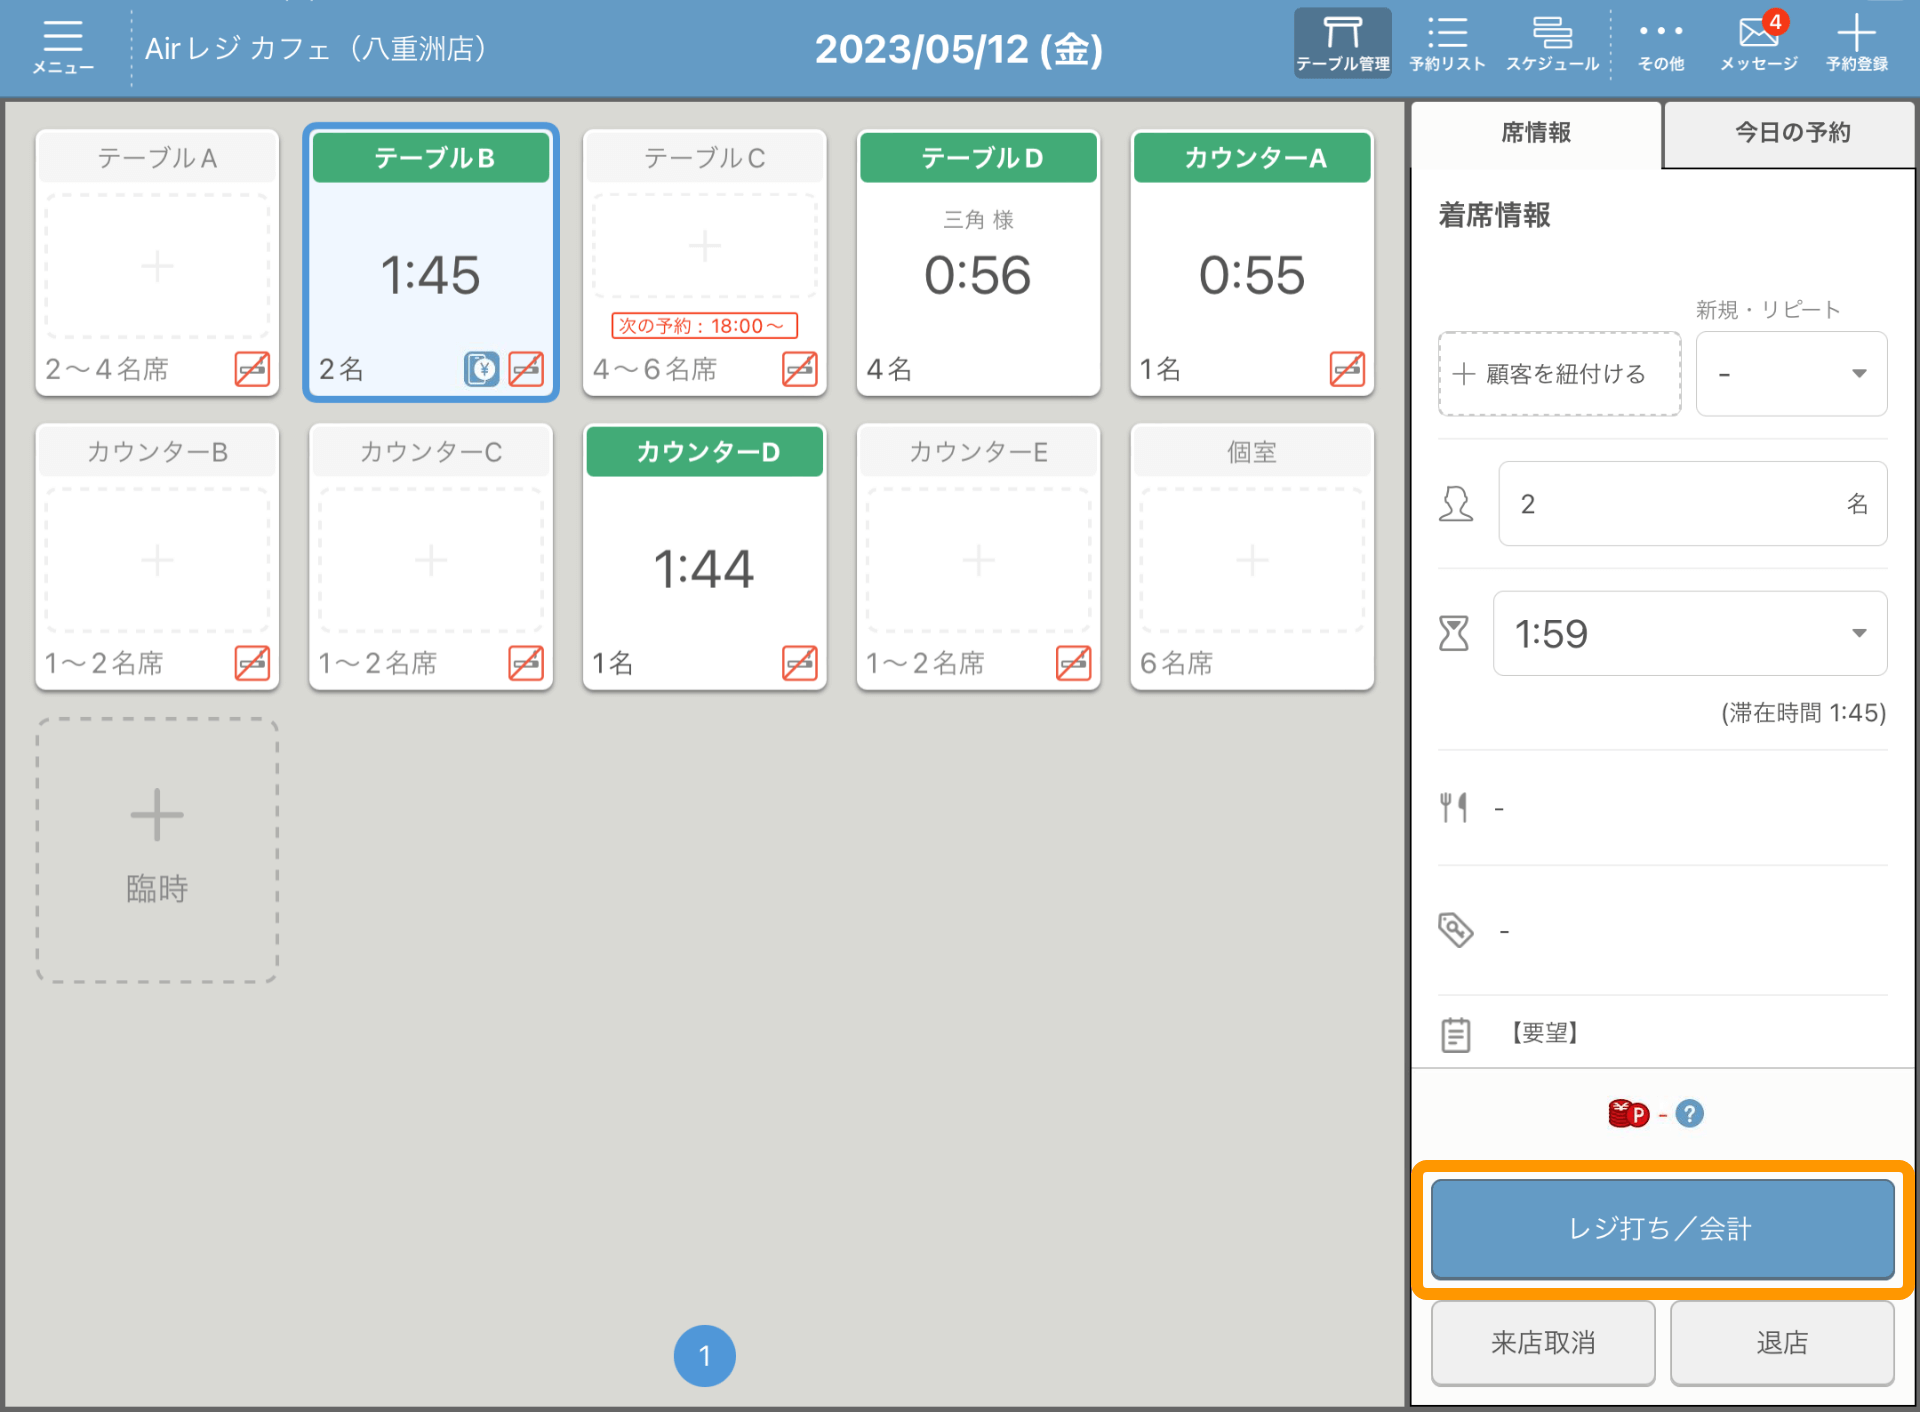 01 レストランボード アプリ テーブル管理画面 レジ打ち／会計